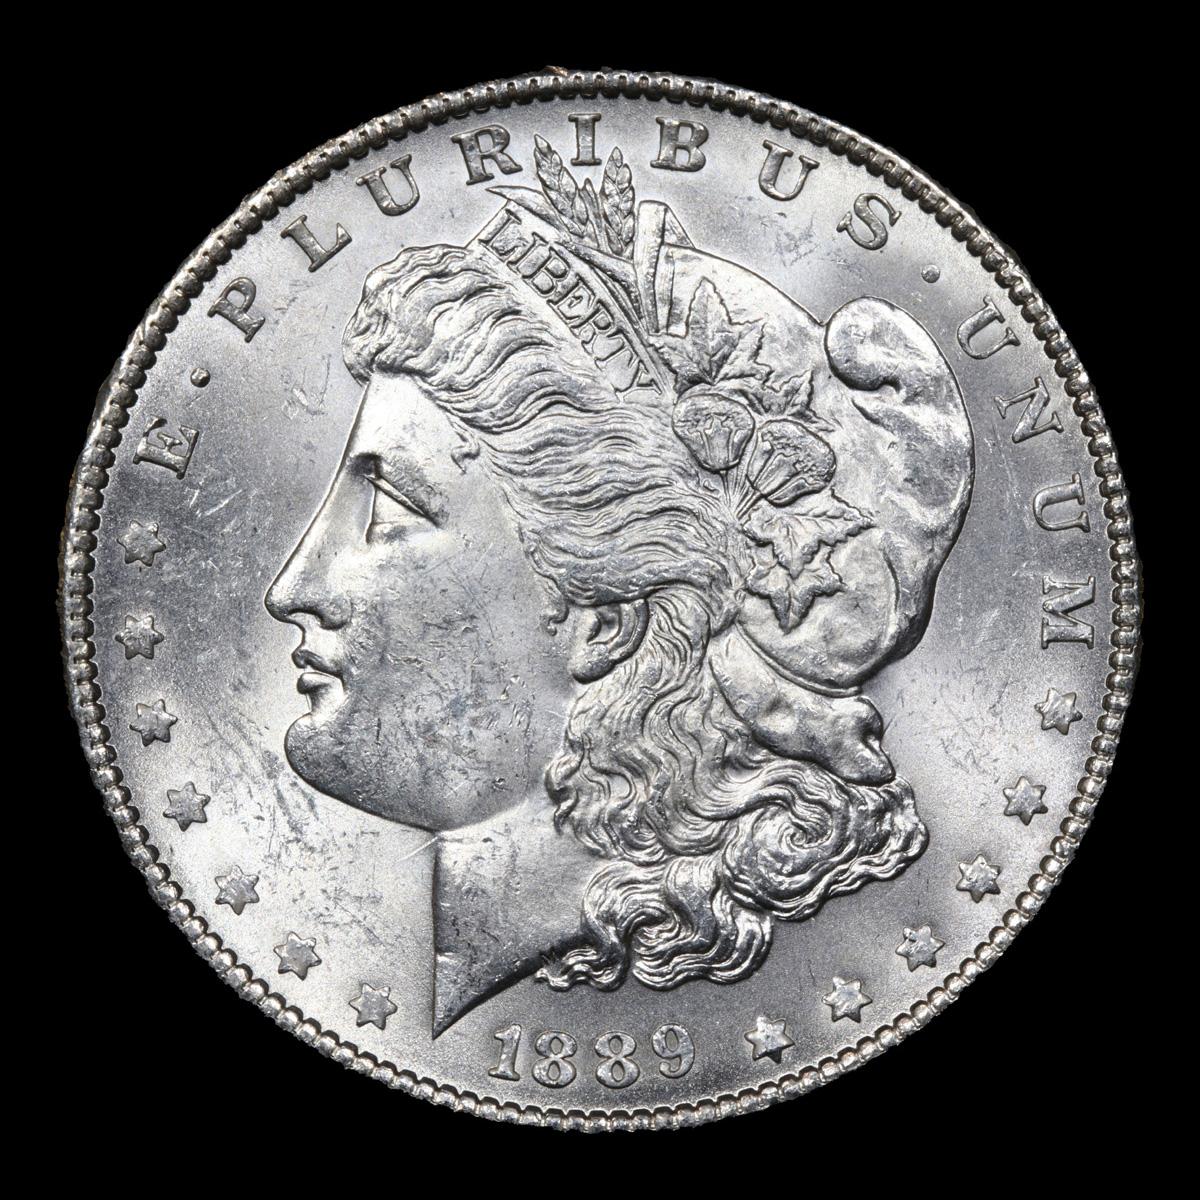 1889-p Morgan Dollar $1 Grades Select Unc